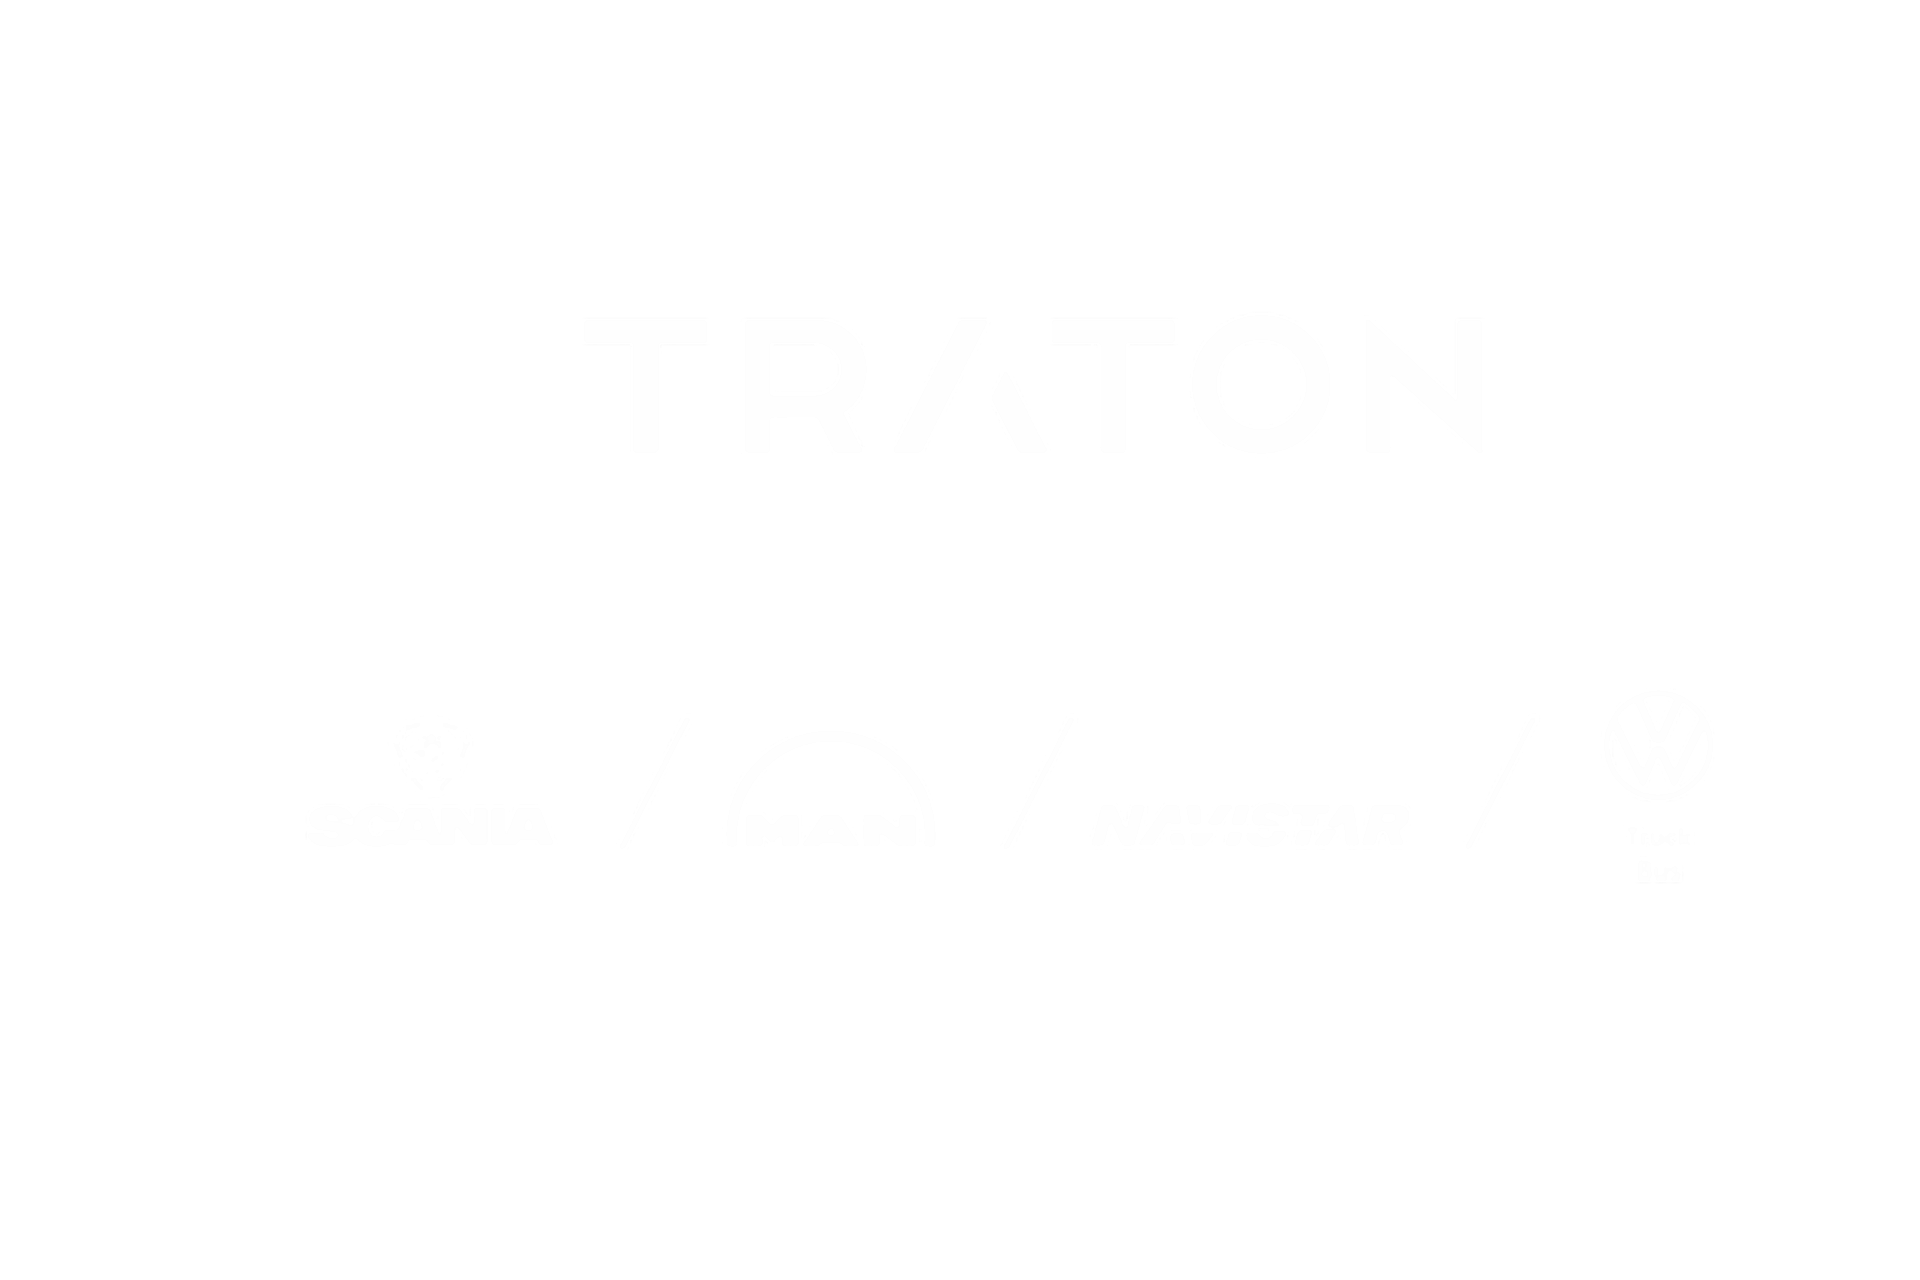 TRATON Logo mit den Logos der anderen Marken Scania, MAN, VWCO, Navistar in weiß